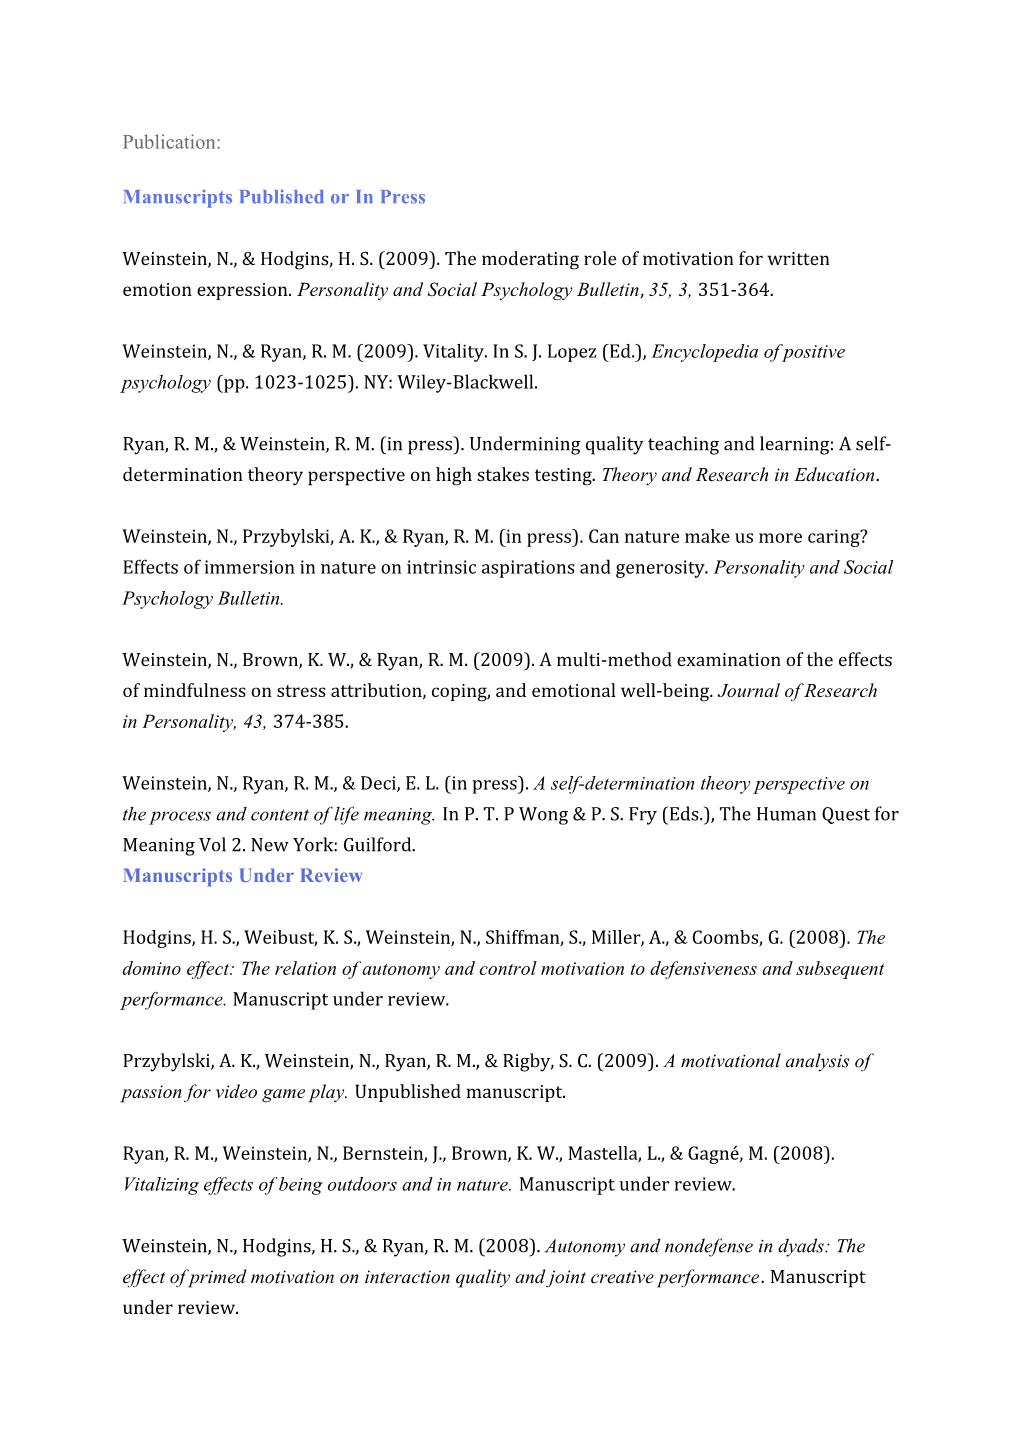 Manuscripts Under Review Hodgins, H. S., Weibust, K. S., Weinstein, N., Shiffman, S